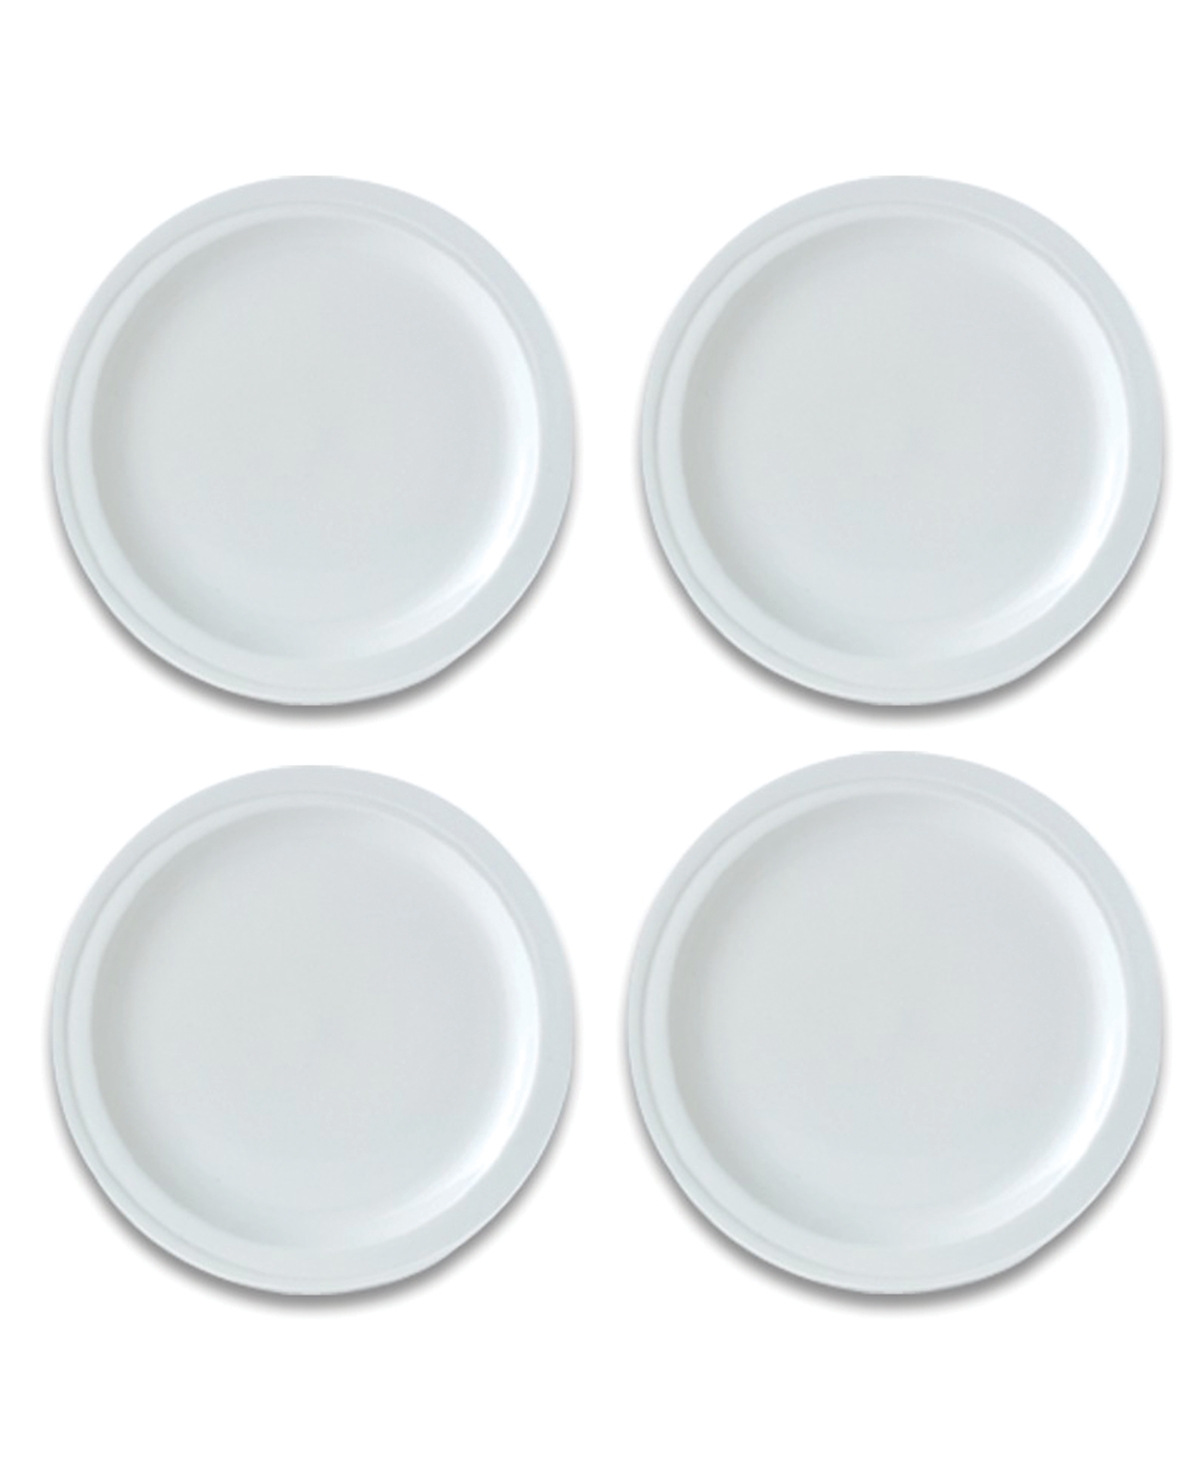 12105673 Essentials Porcelain Round Plate, Set of 4 sku 12105673